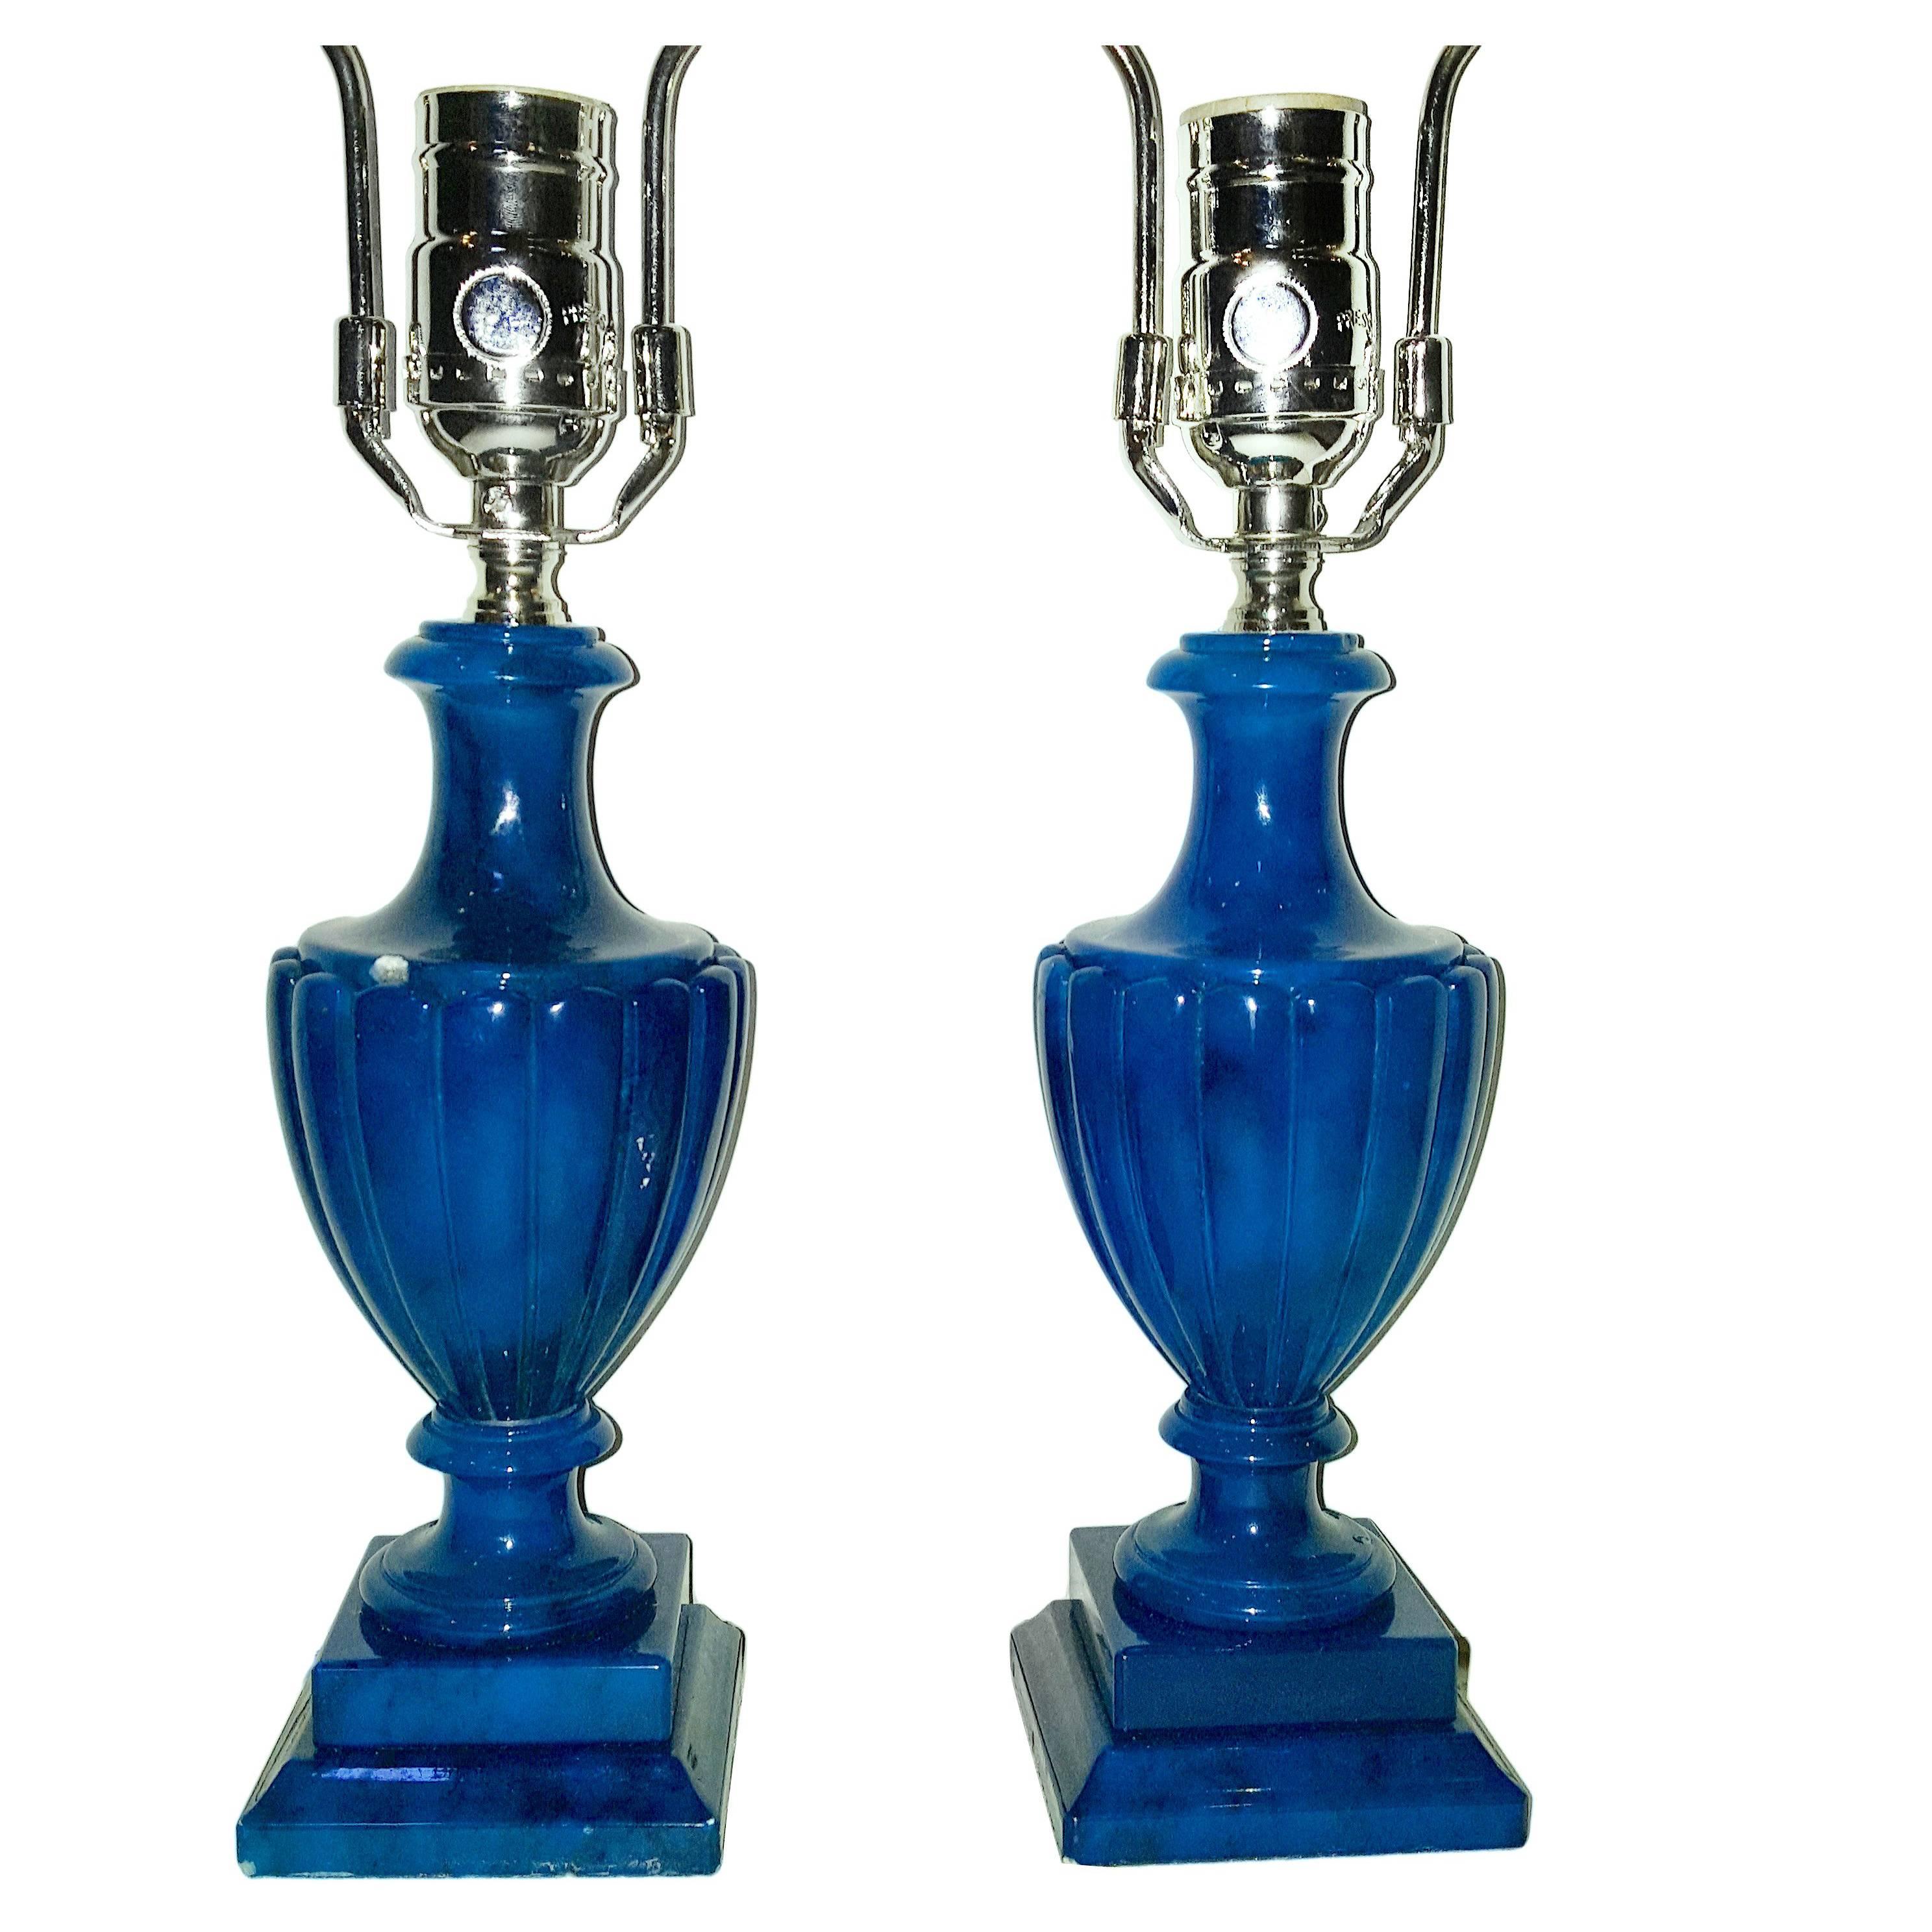 Paire de lampes de table italiennes des années 1920 en albâtre bleu avec corps en forme d'urne et bases sur piédestal.